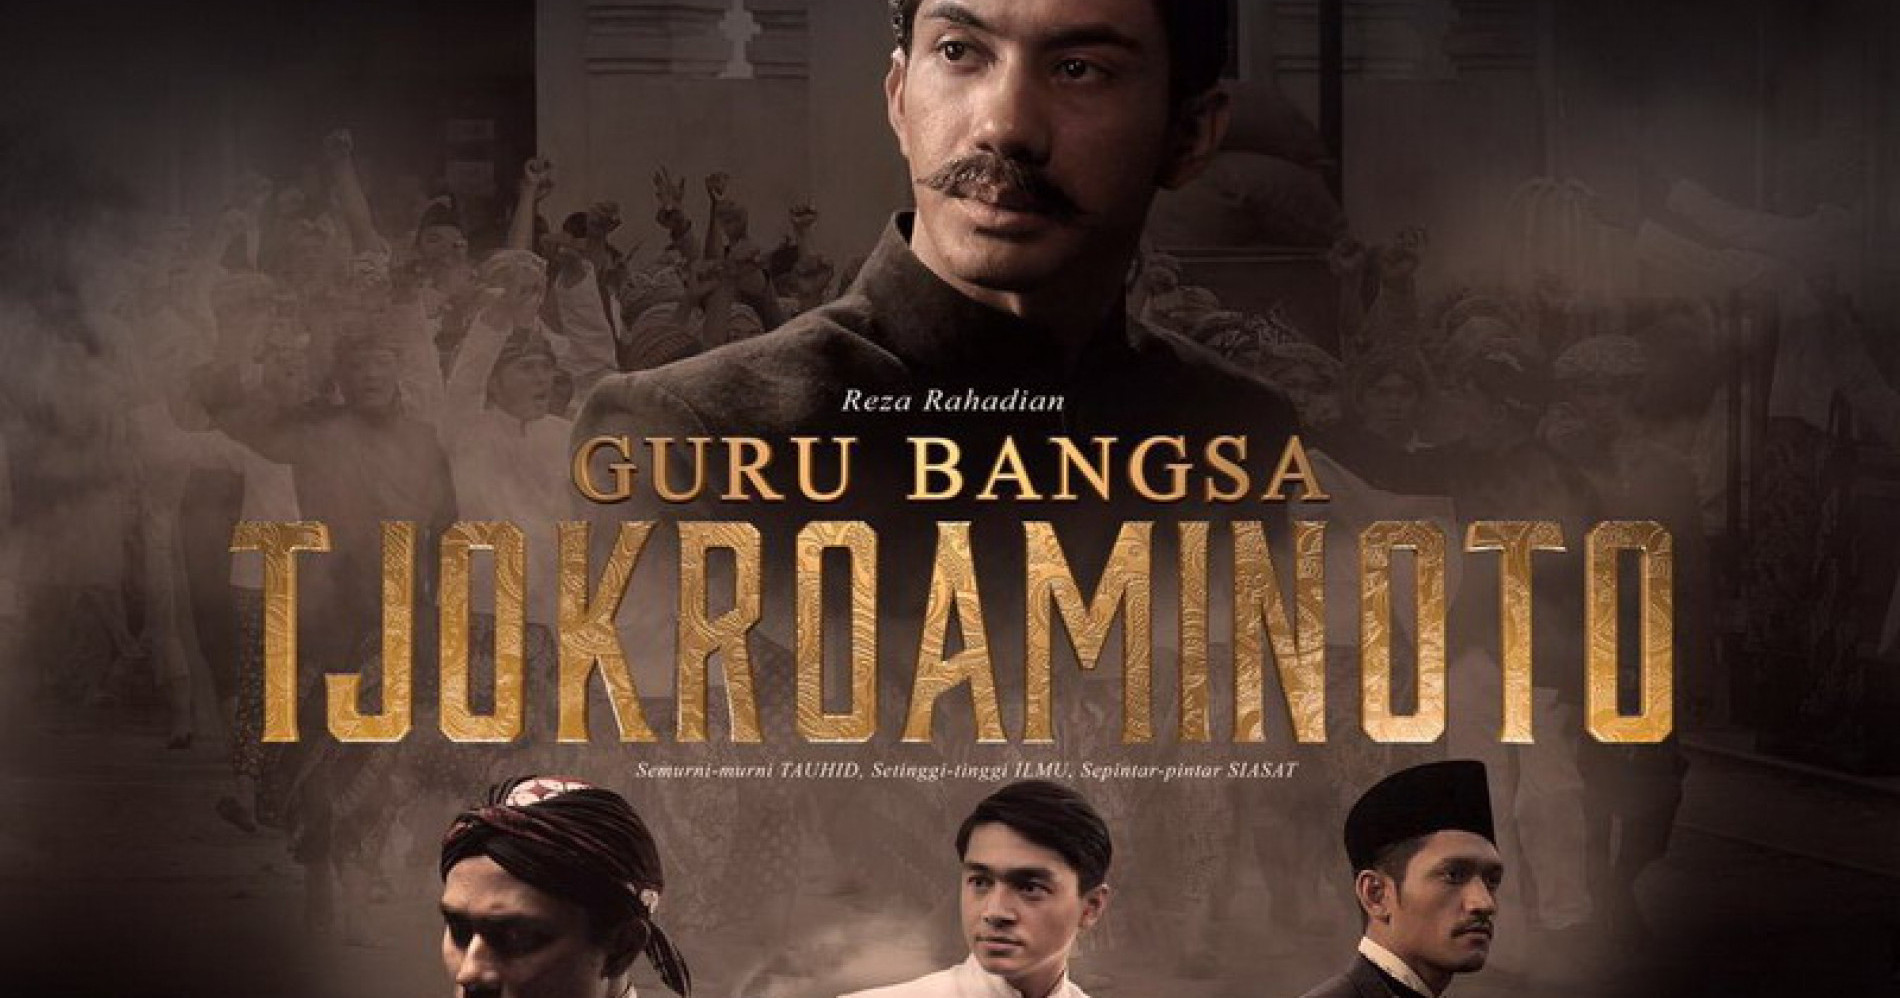 Film Guru Bangsa: Tjokroaminoto yang dibintangi oleh Reza Rahardian